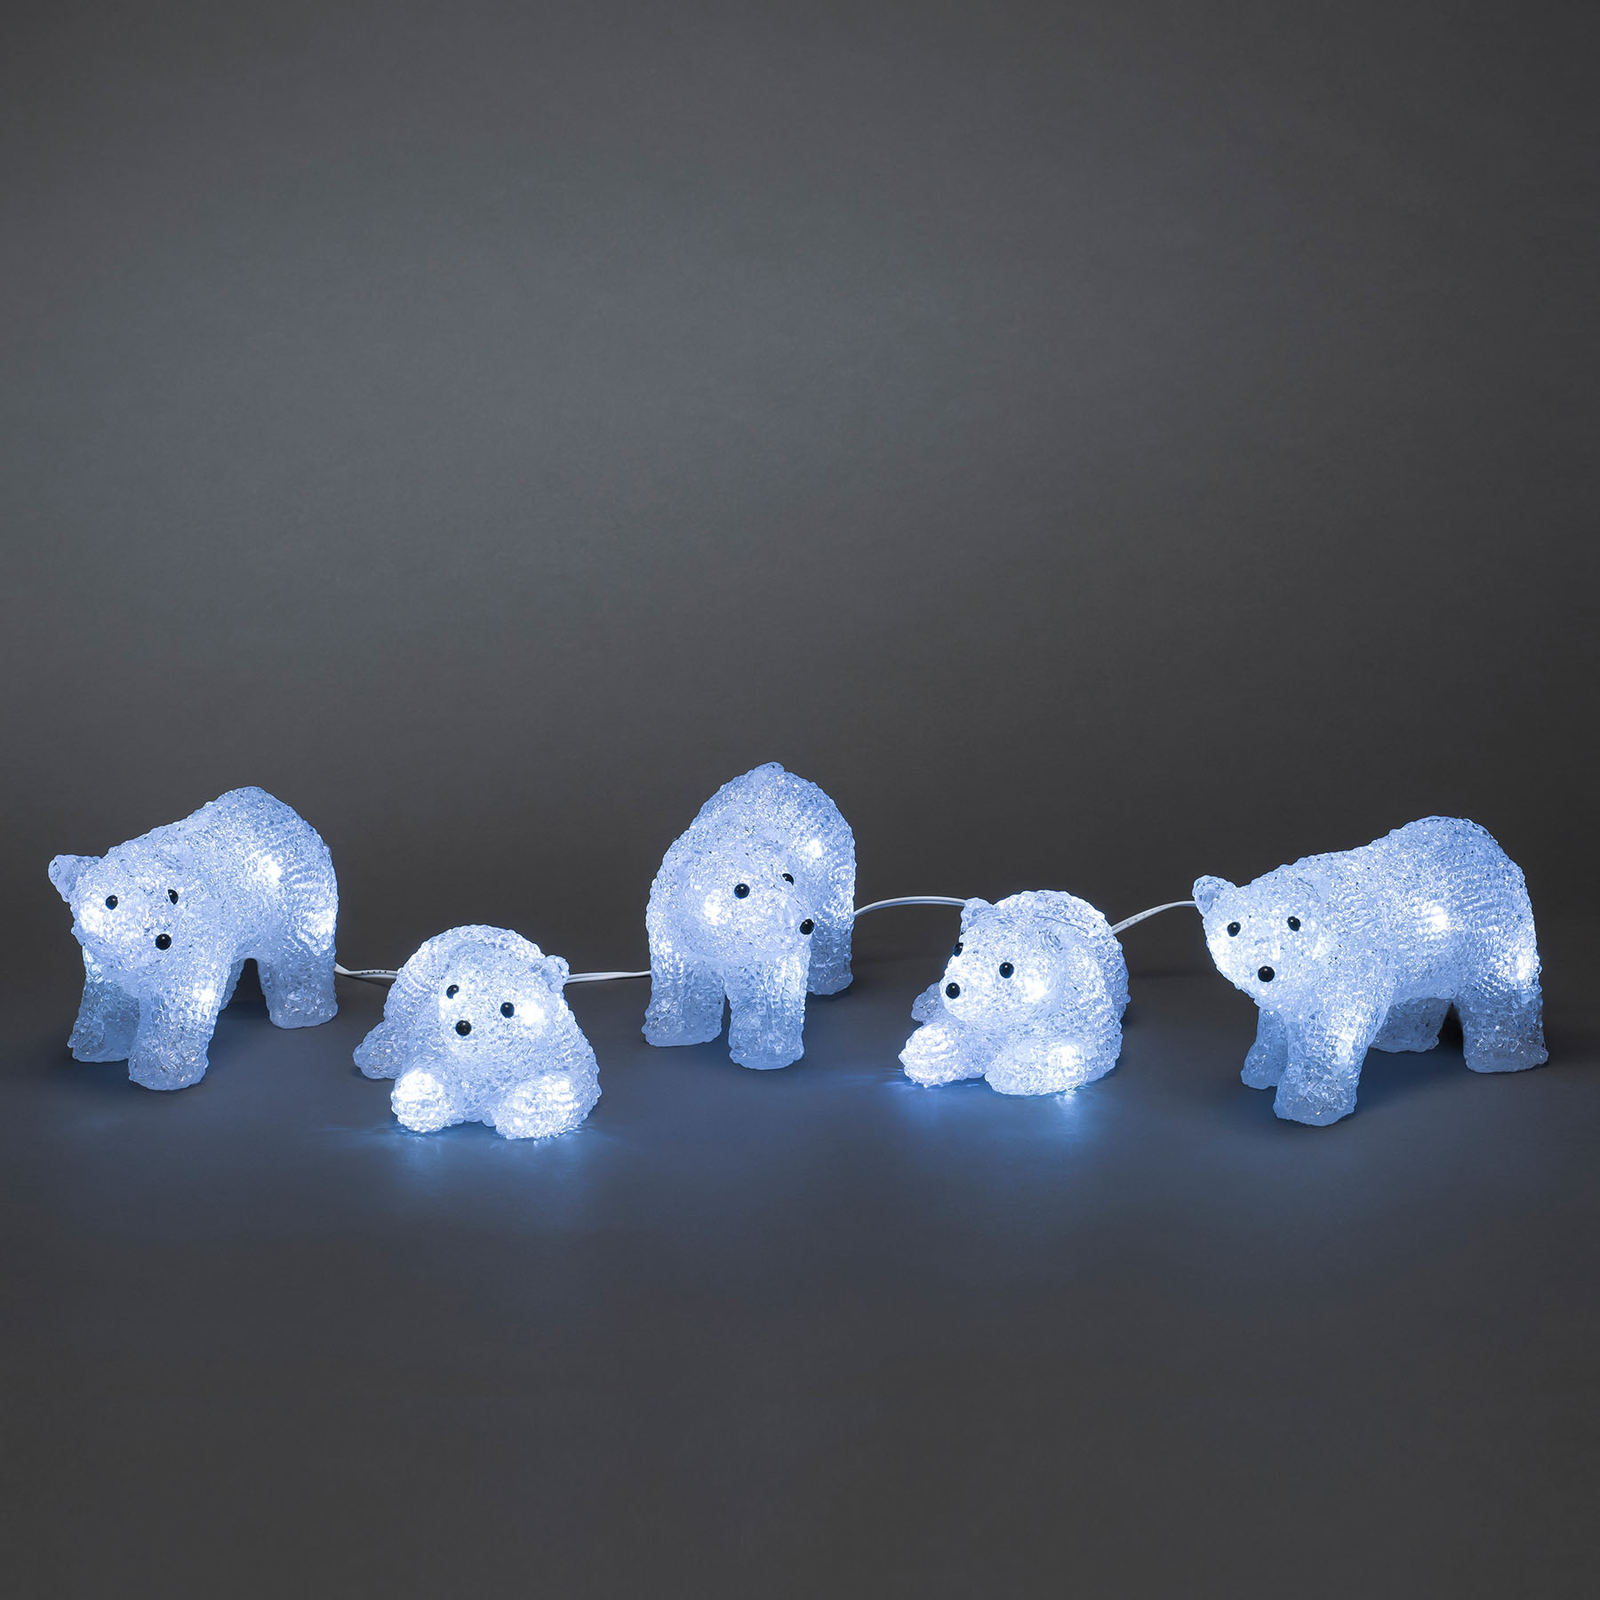 LED-belyste isbjørnfigurer for utendørsbruk, sett med 5 stk